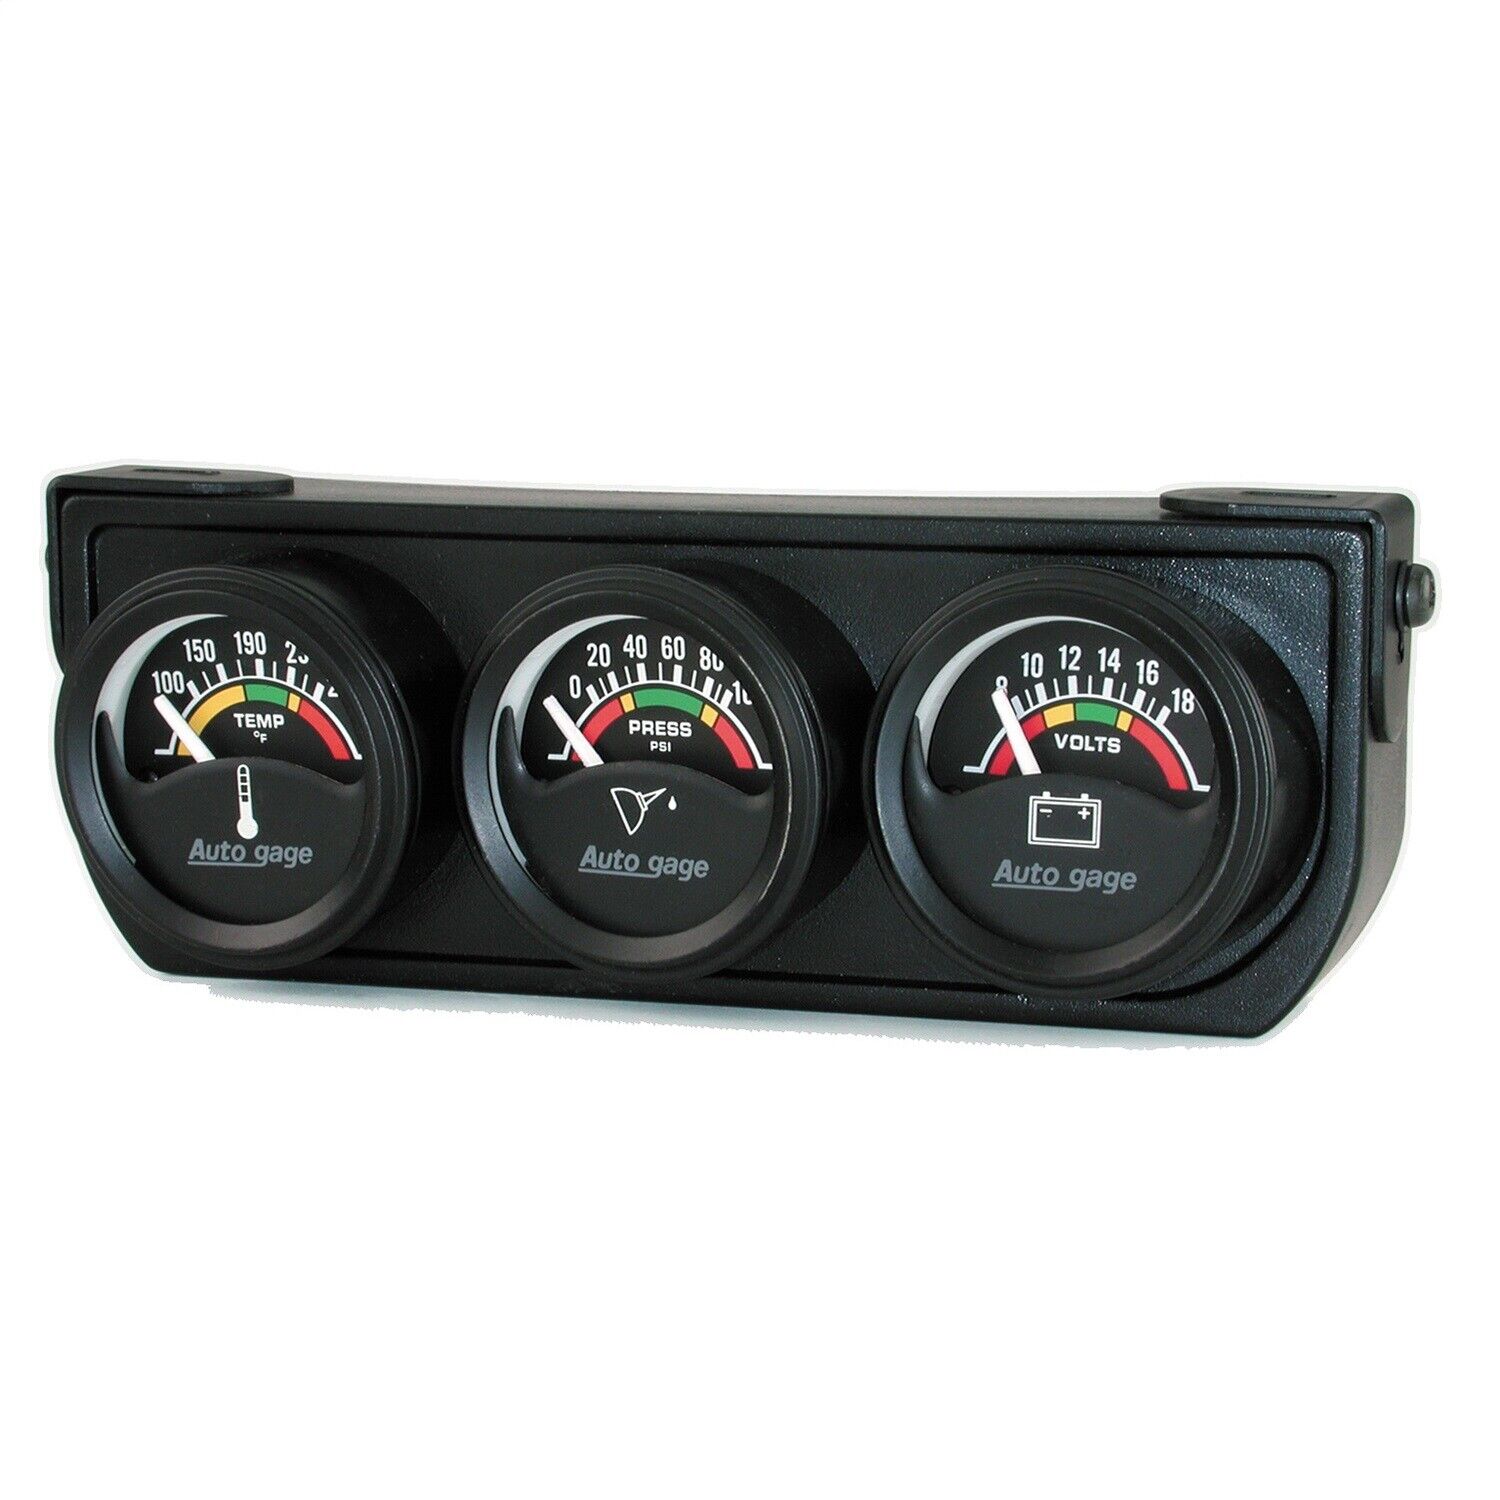 AutoMeter 2391 Autogage Electric Mini Oil/Volt/Water Gauge Black Console